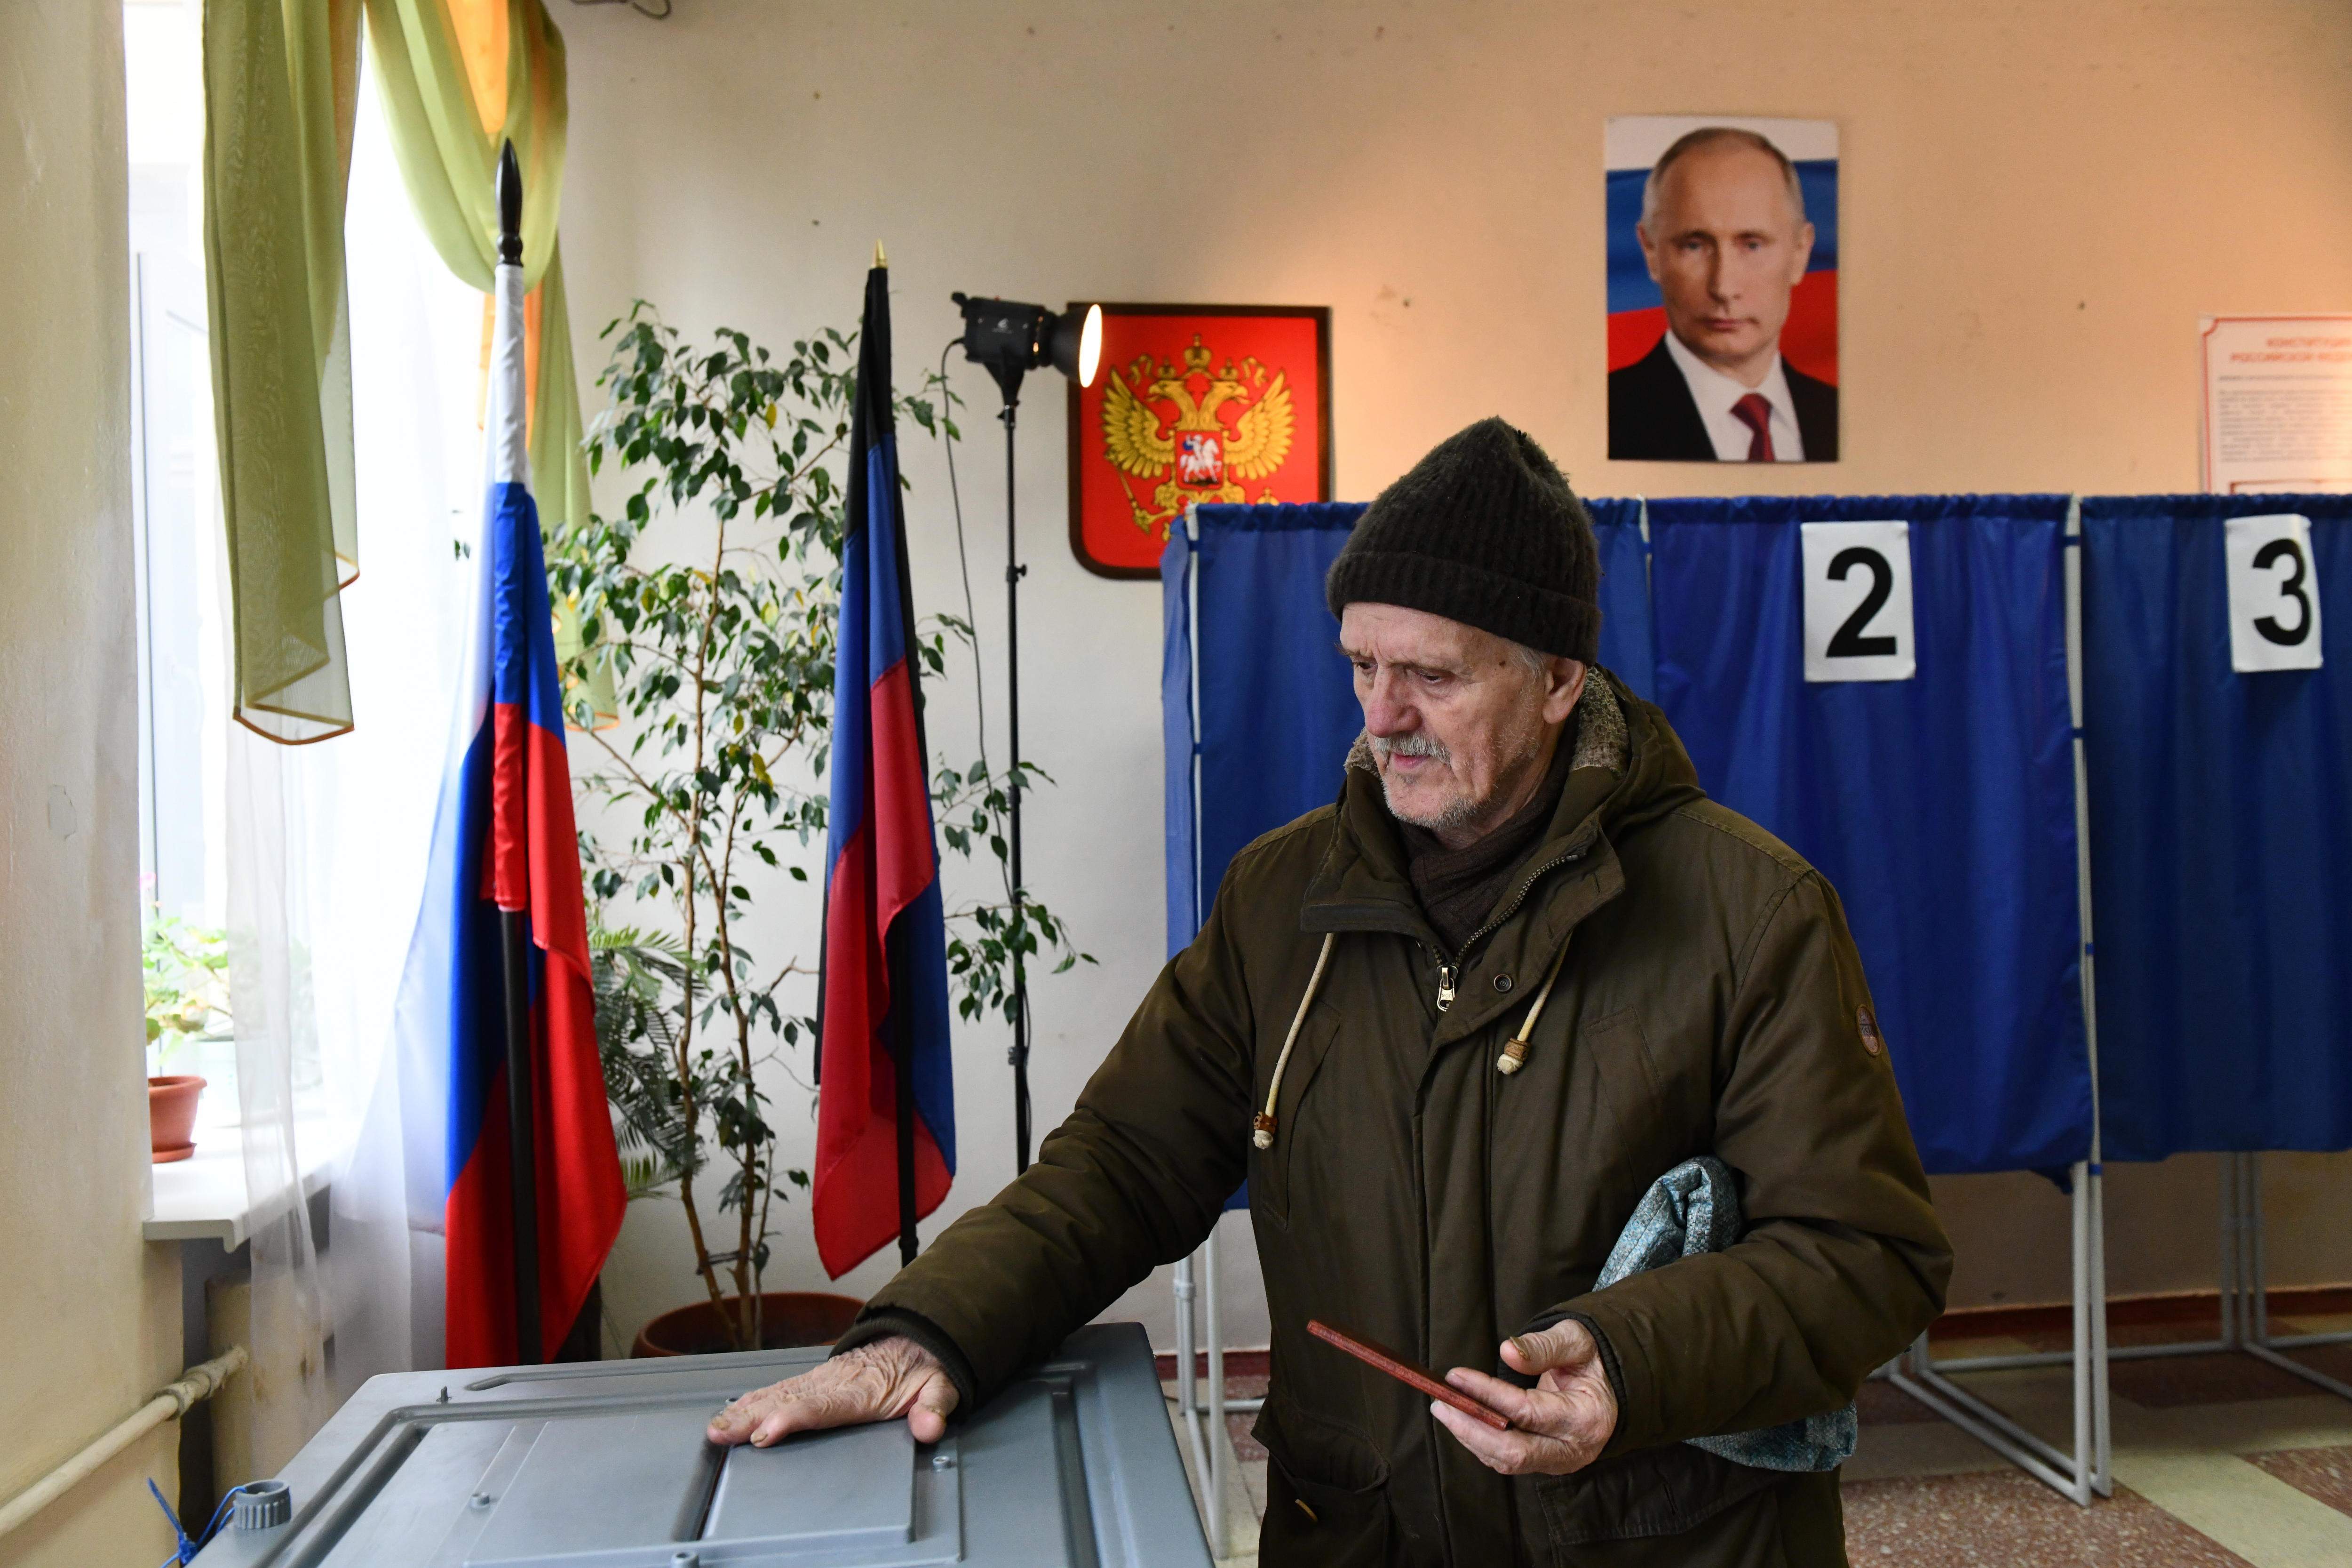 Tinta verde en las urnas y colegios quemados: los rusos muestran el desacuerdo con Putin en las elecciones